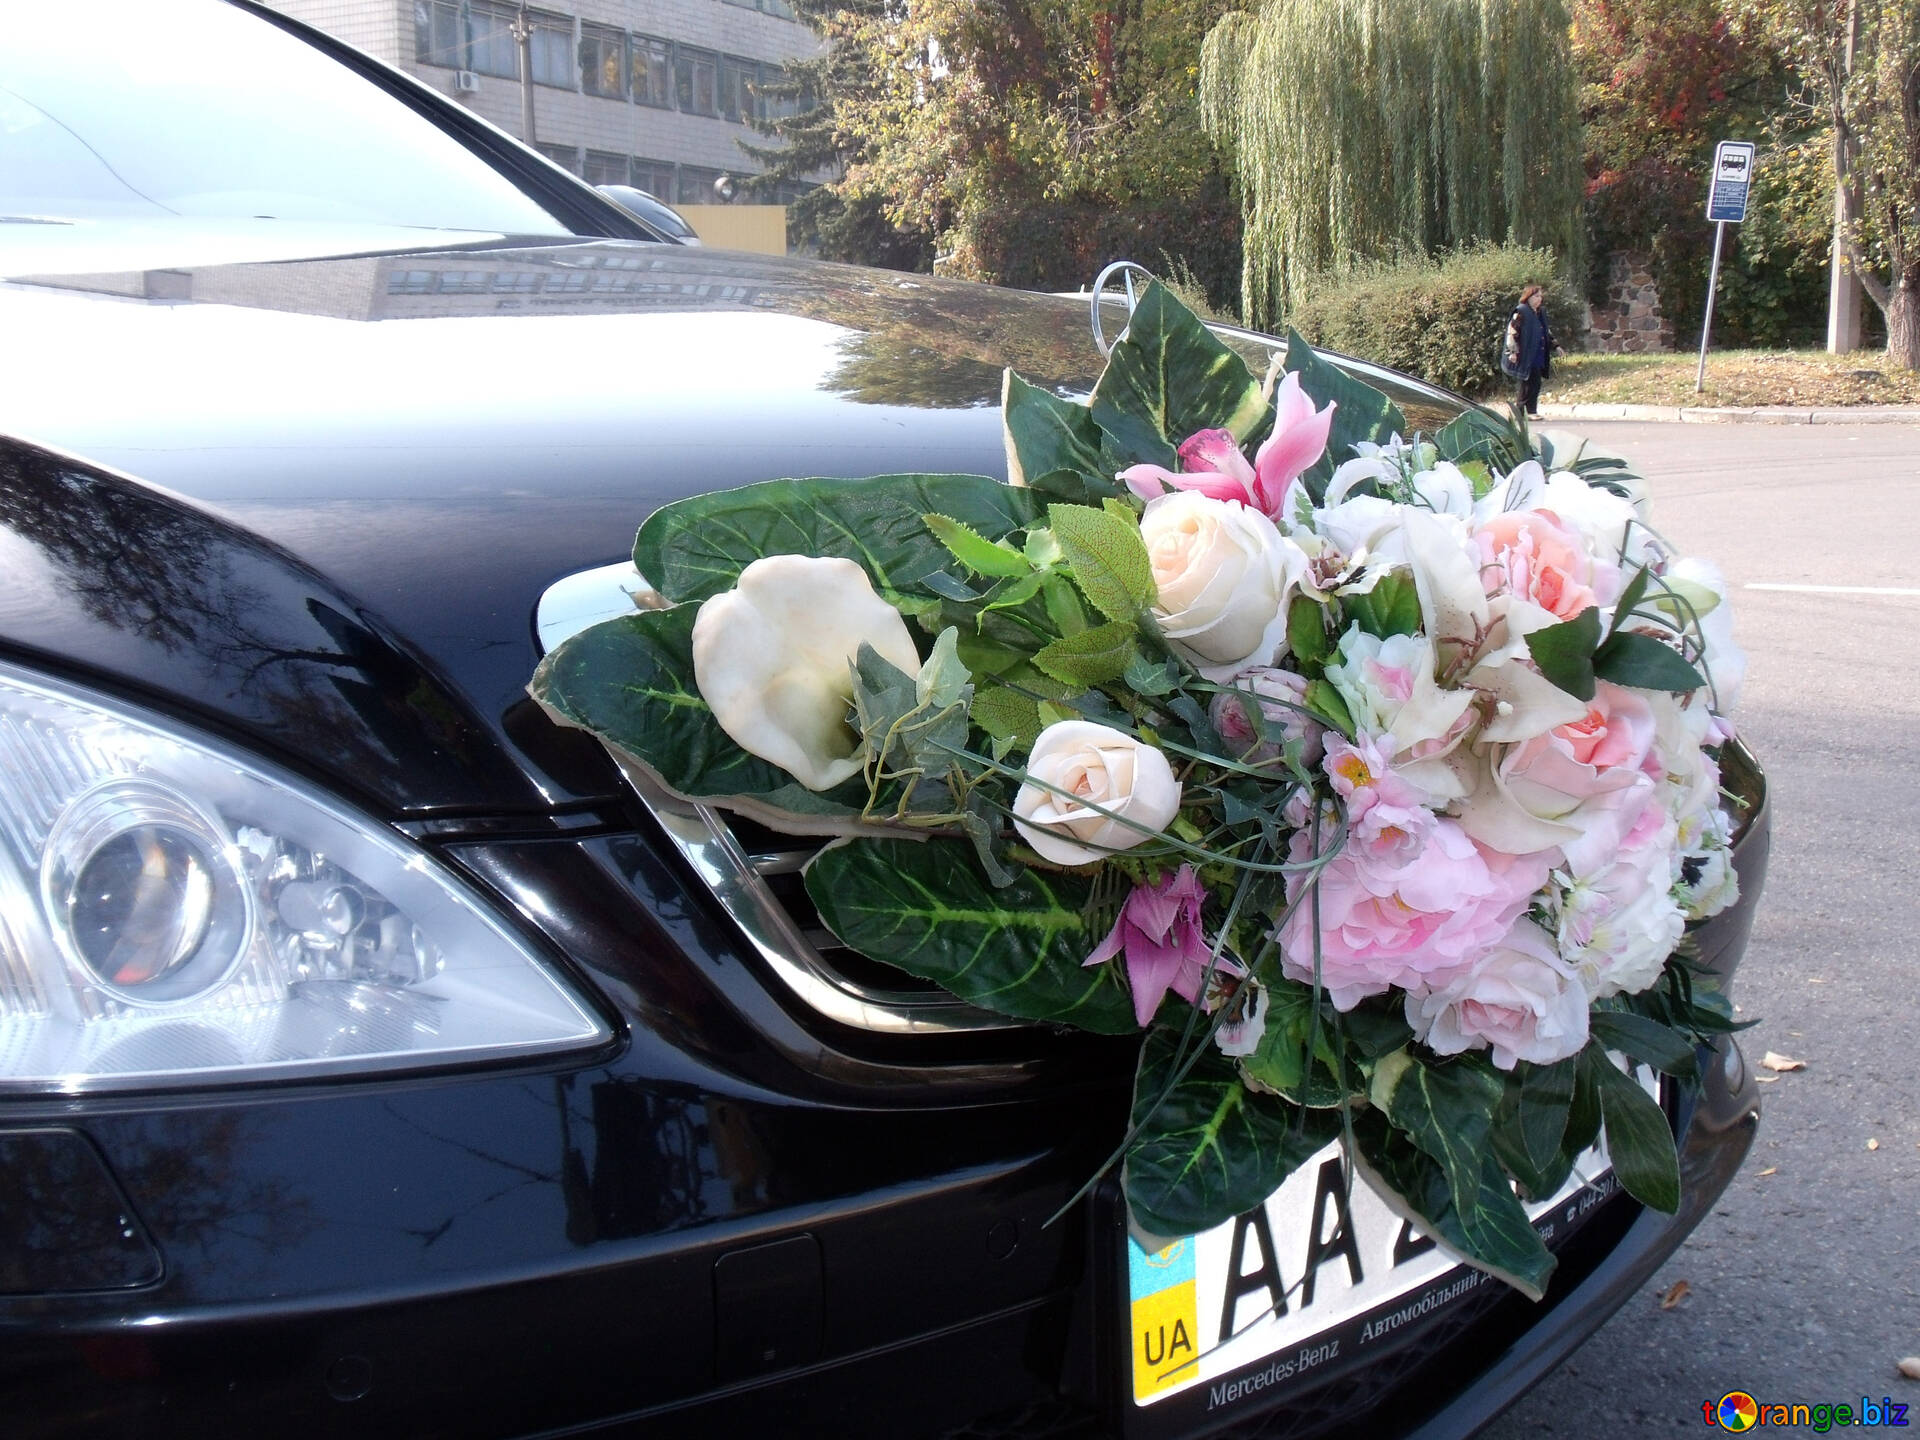 Mariage bouquet à voiture image libre - № 10094